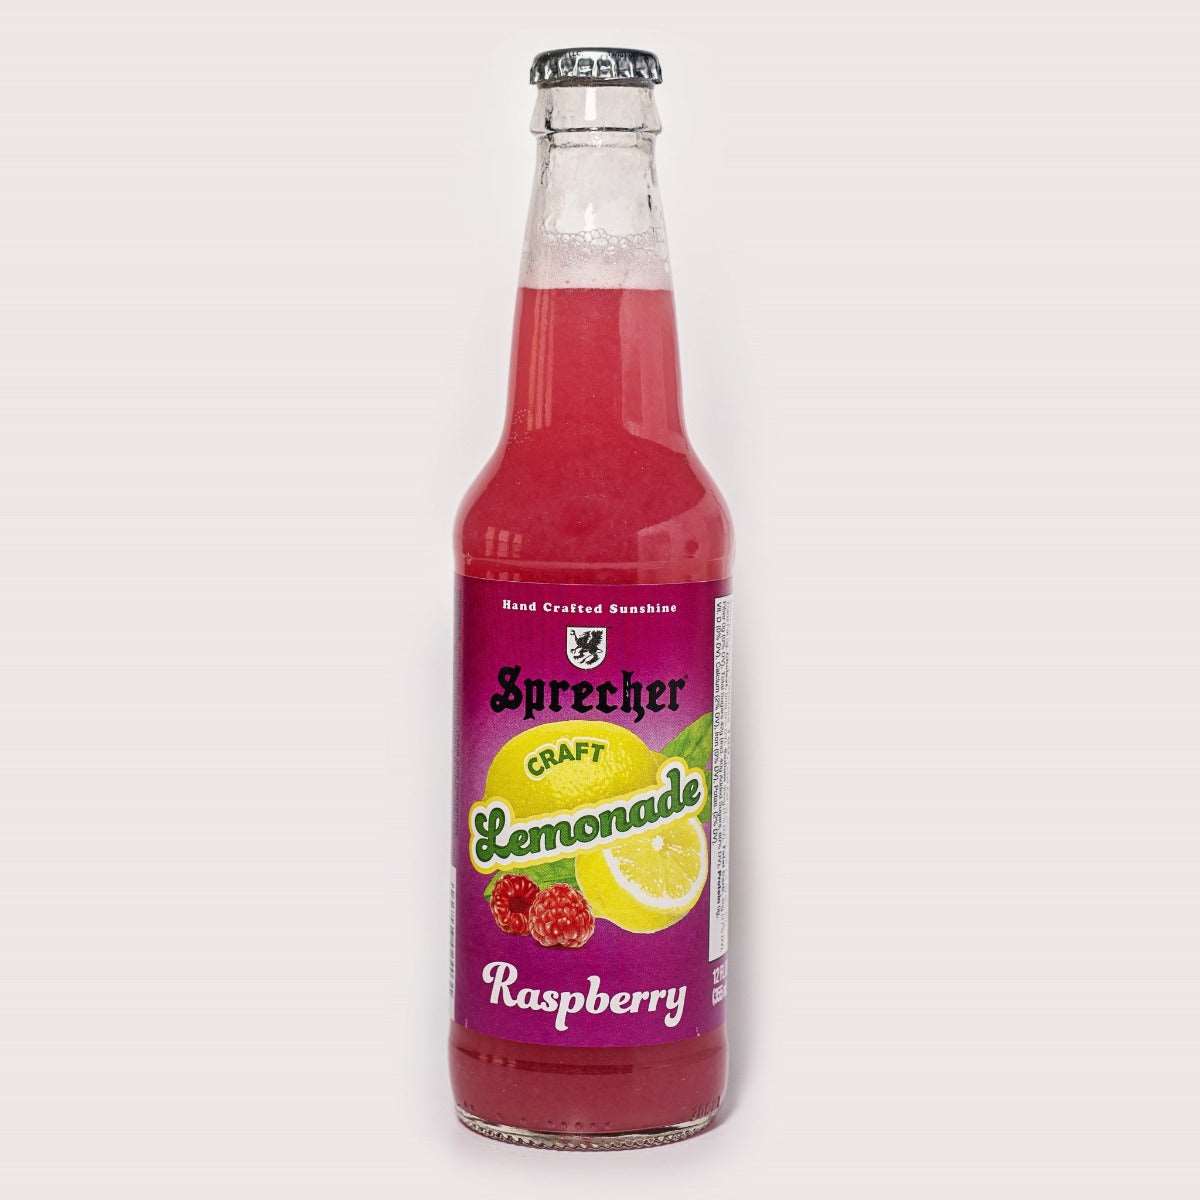 12oz Bottle of Sprecher Raspberry Lemonade